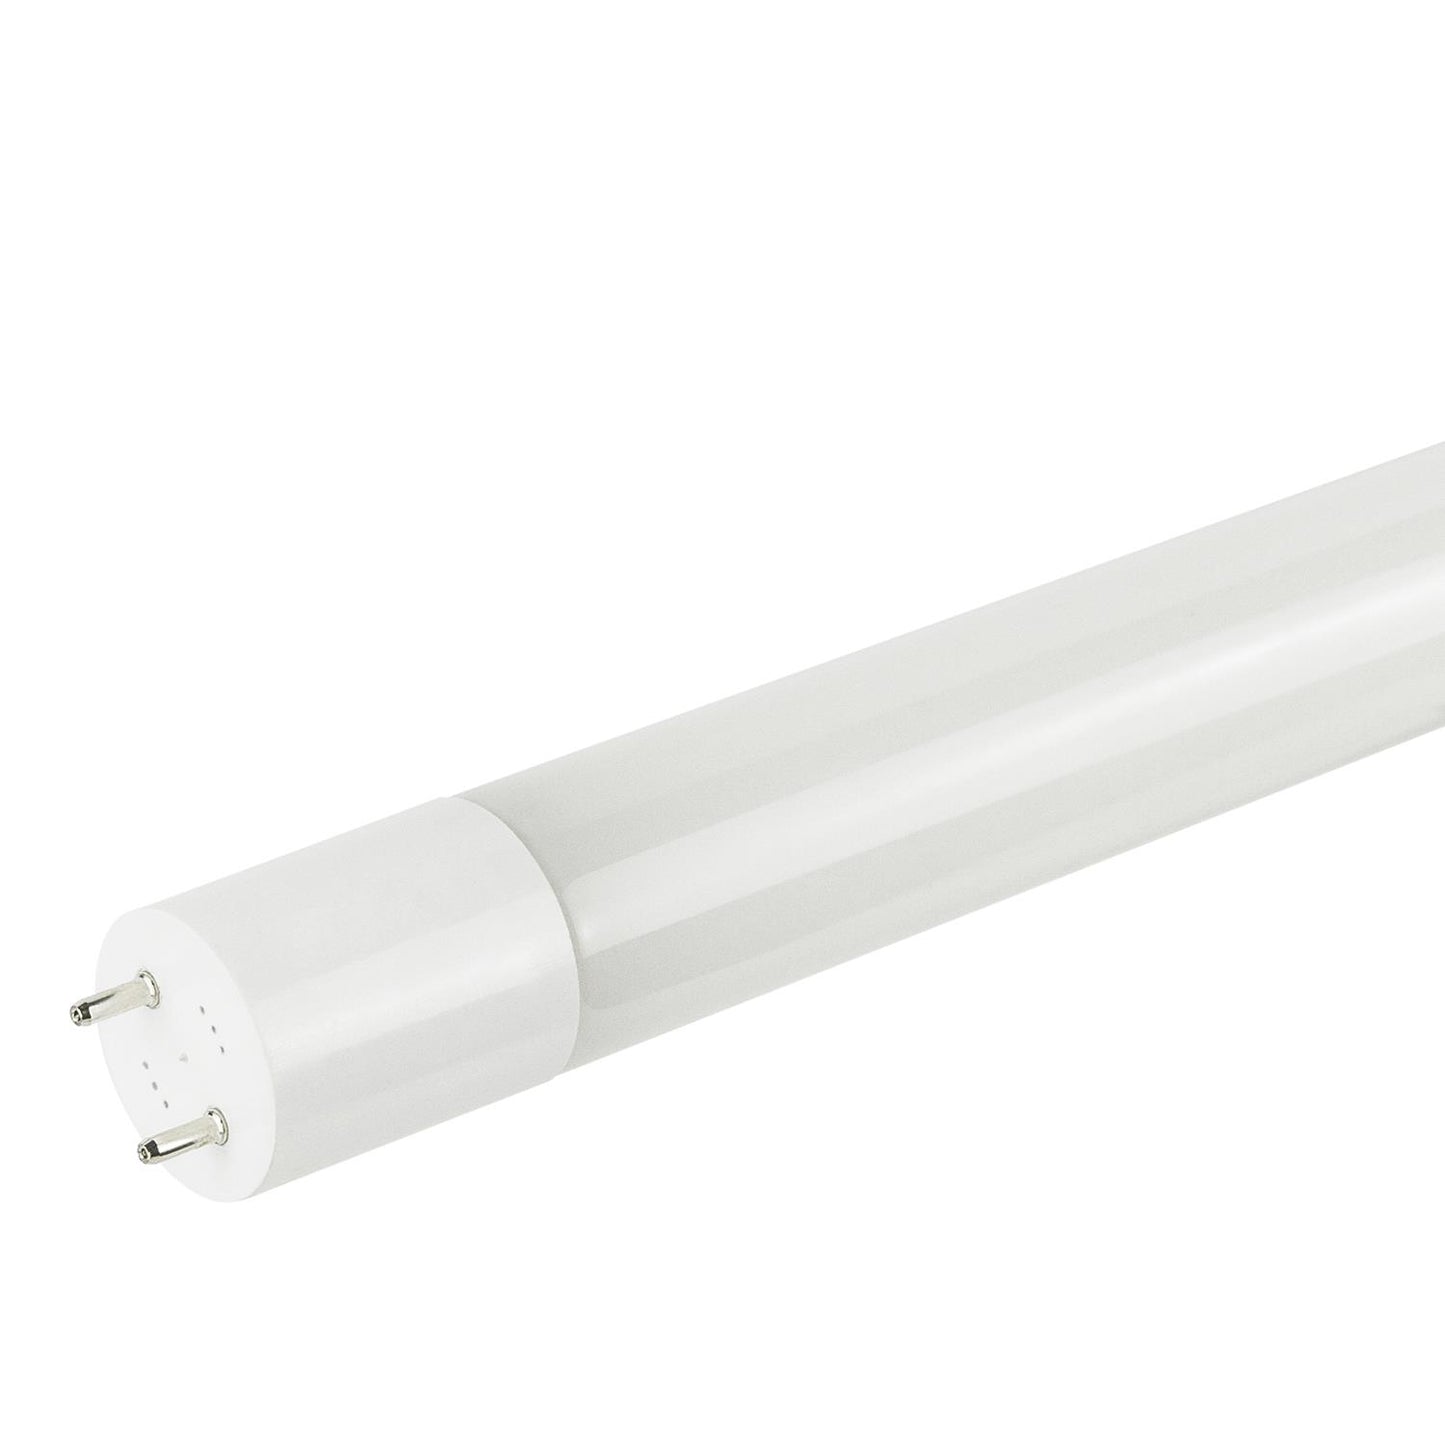 Sunlite T8/LED/4'/11.5W/IS/DLC/50K LED 11.5W 4 Foot Instant Start T8 Tube Light Fixtures, 5000K Super White Light, G13 Base